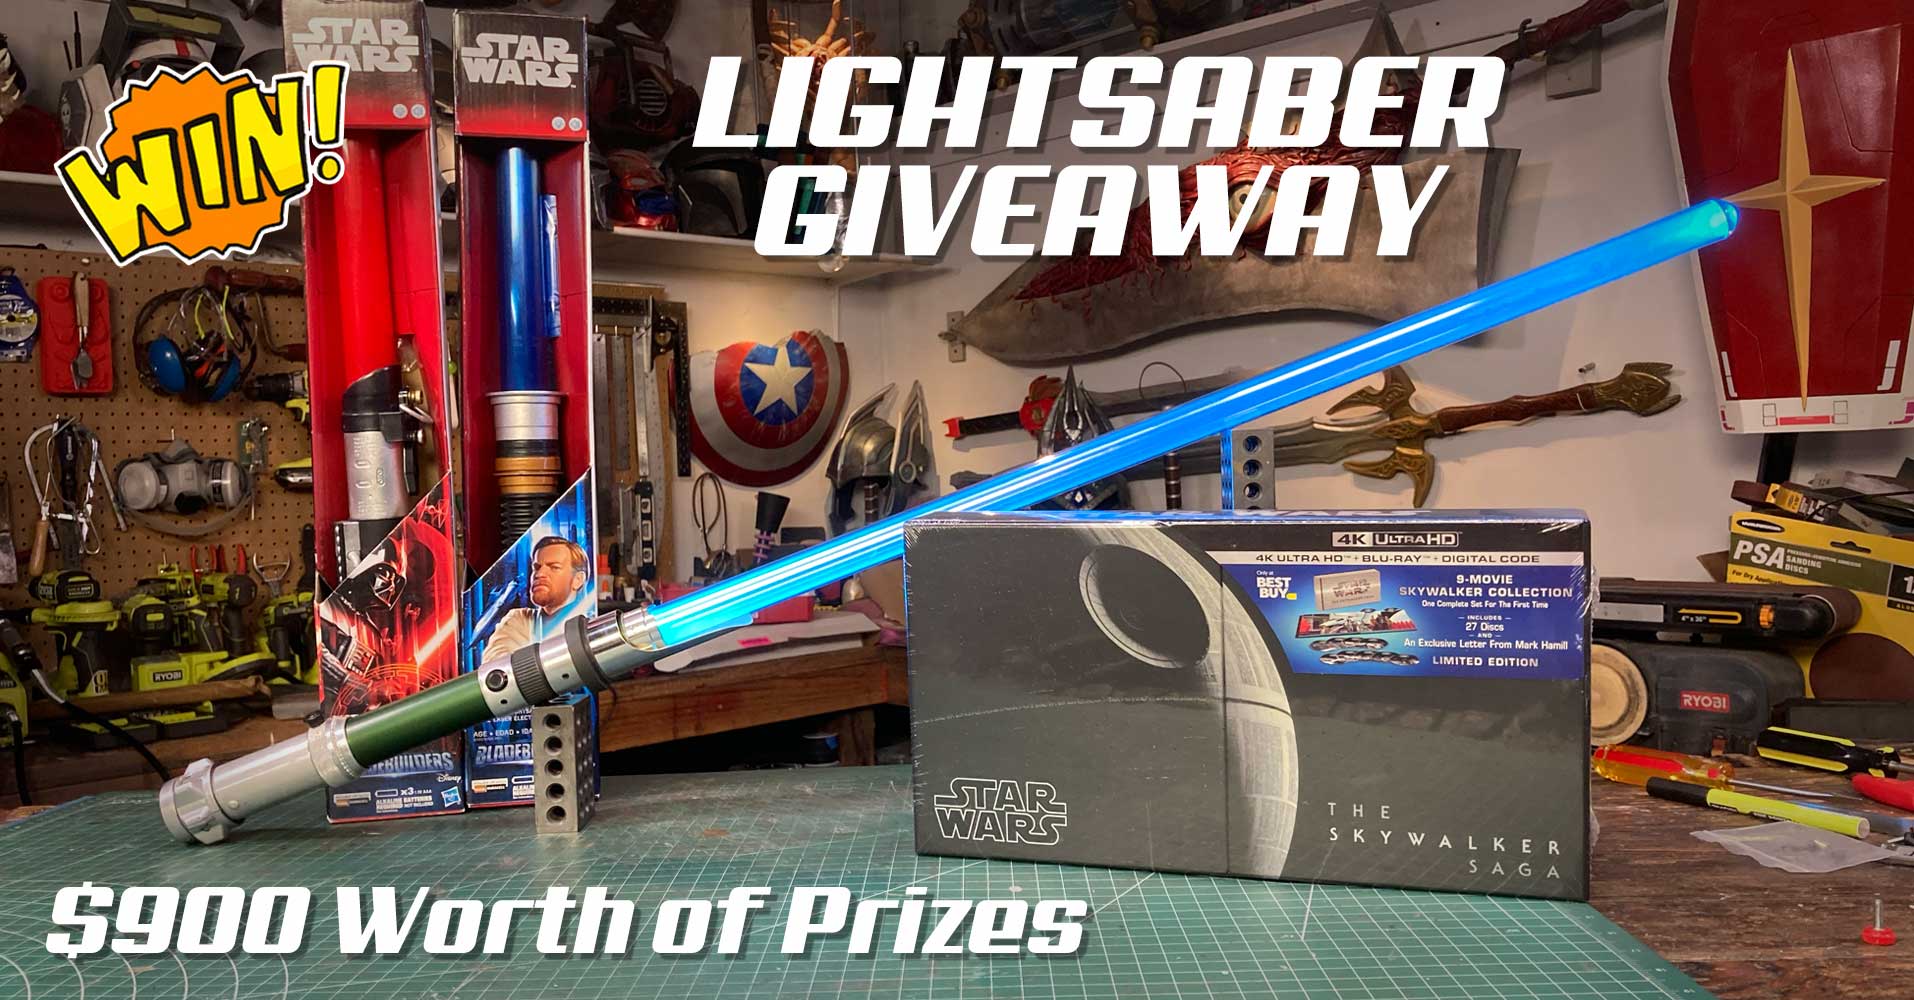 Star wars lightsaber giveaway.